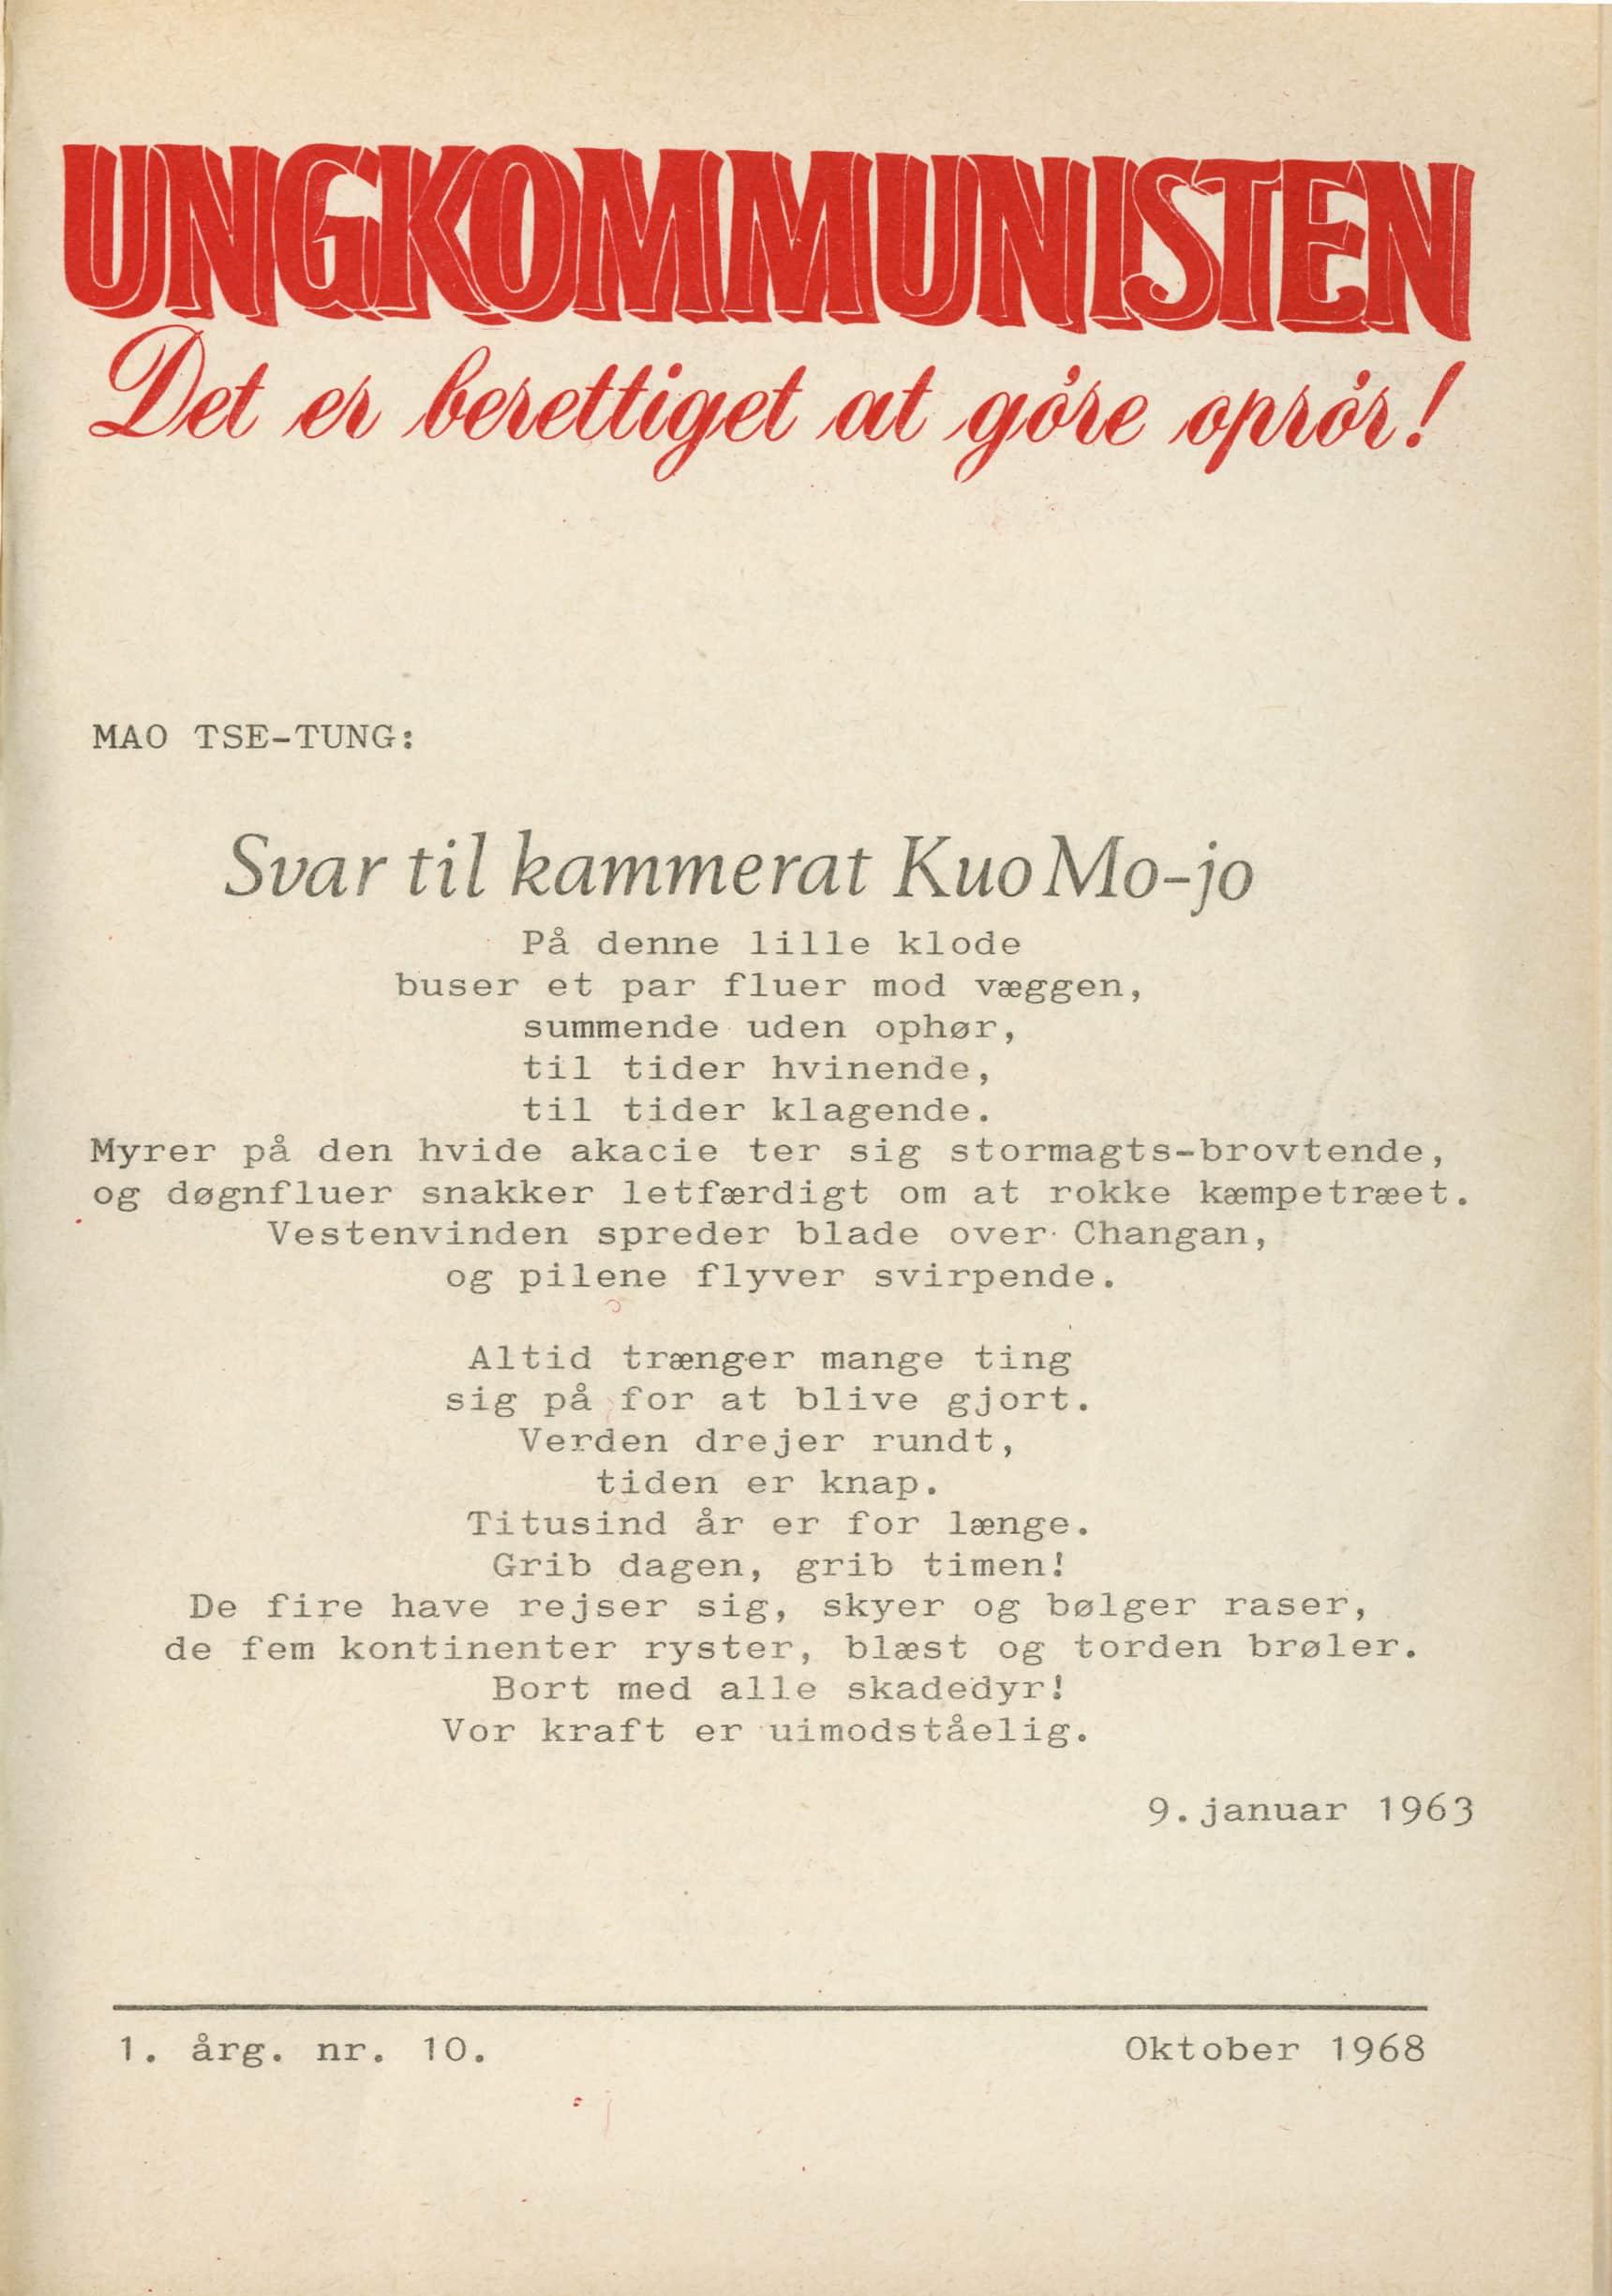 Ungkommunisten1968, nr. 10, Forsiden.